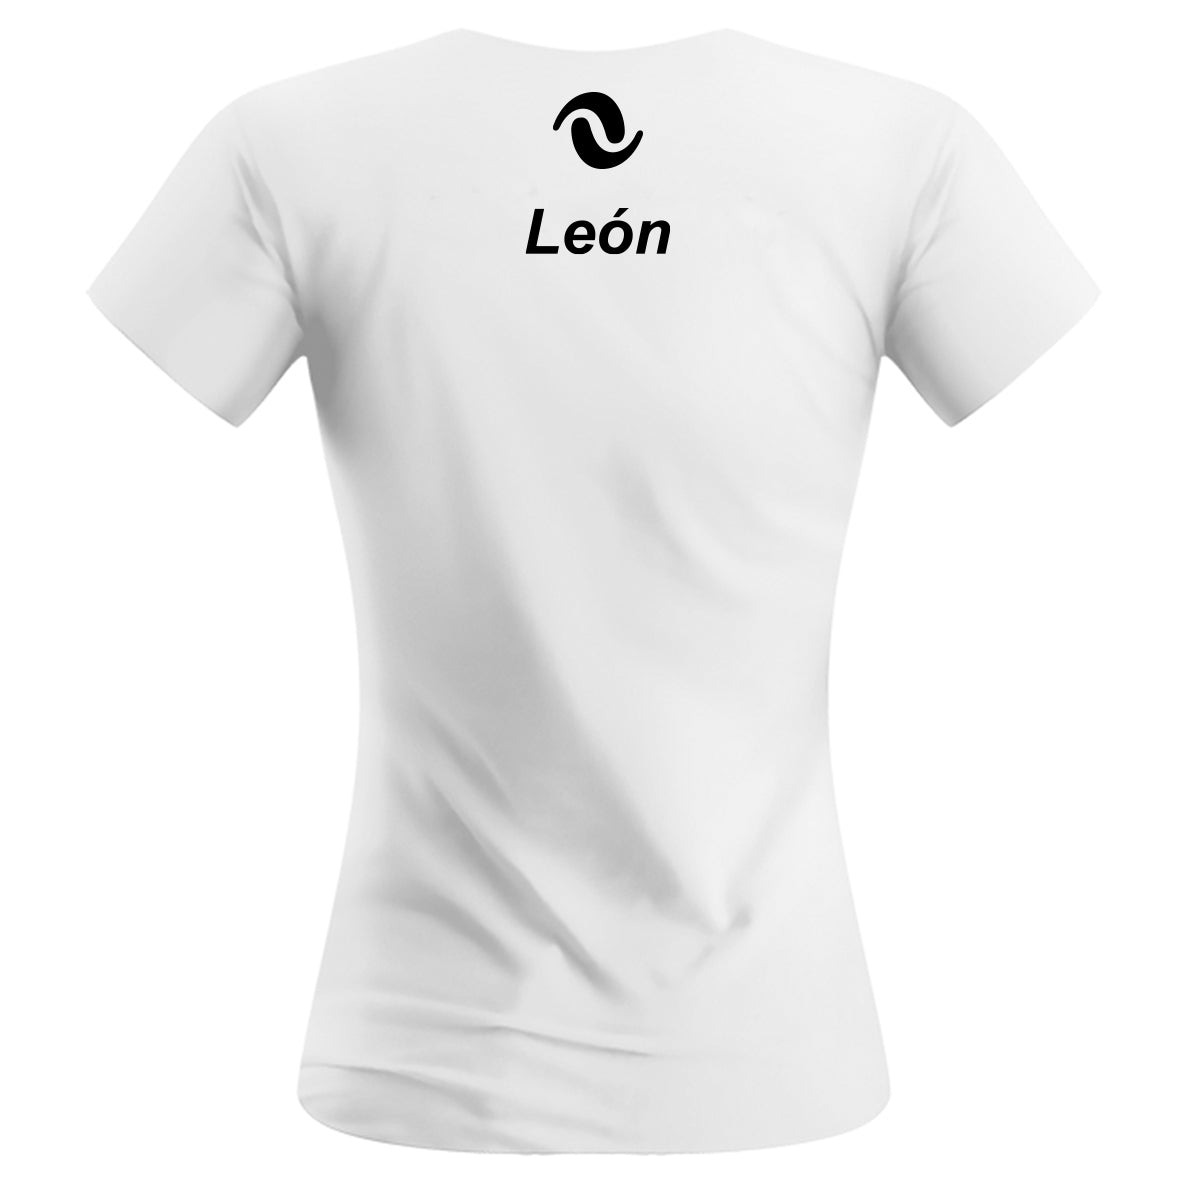 NV León - Performance Shirt